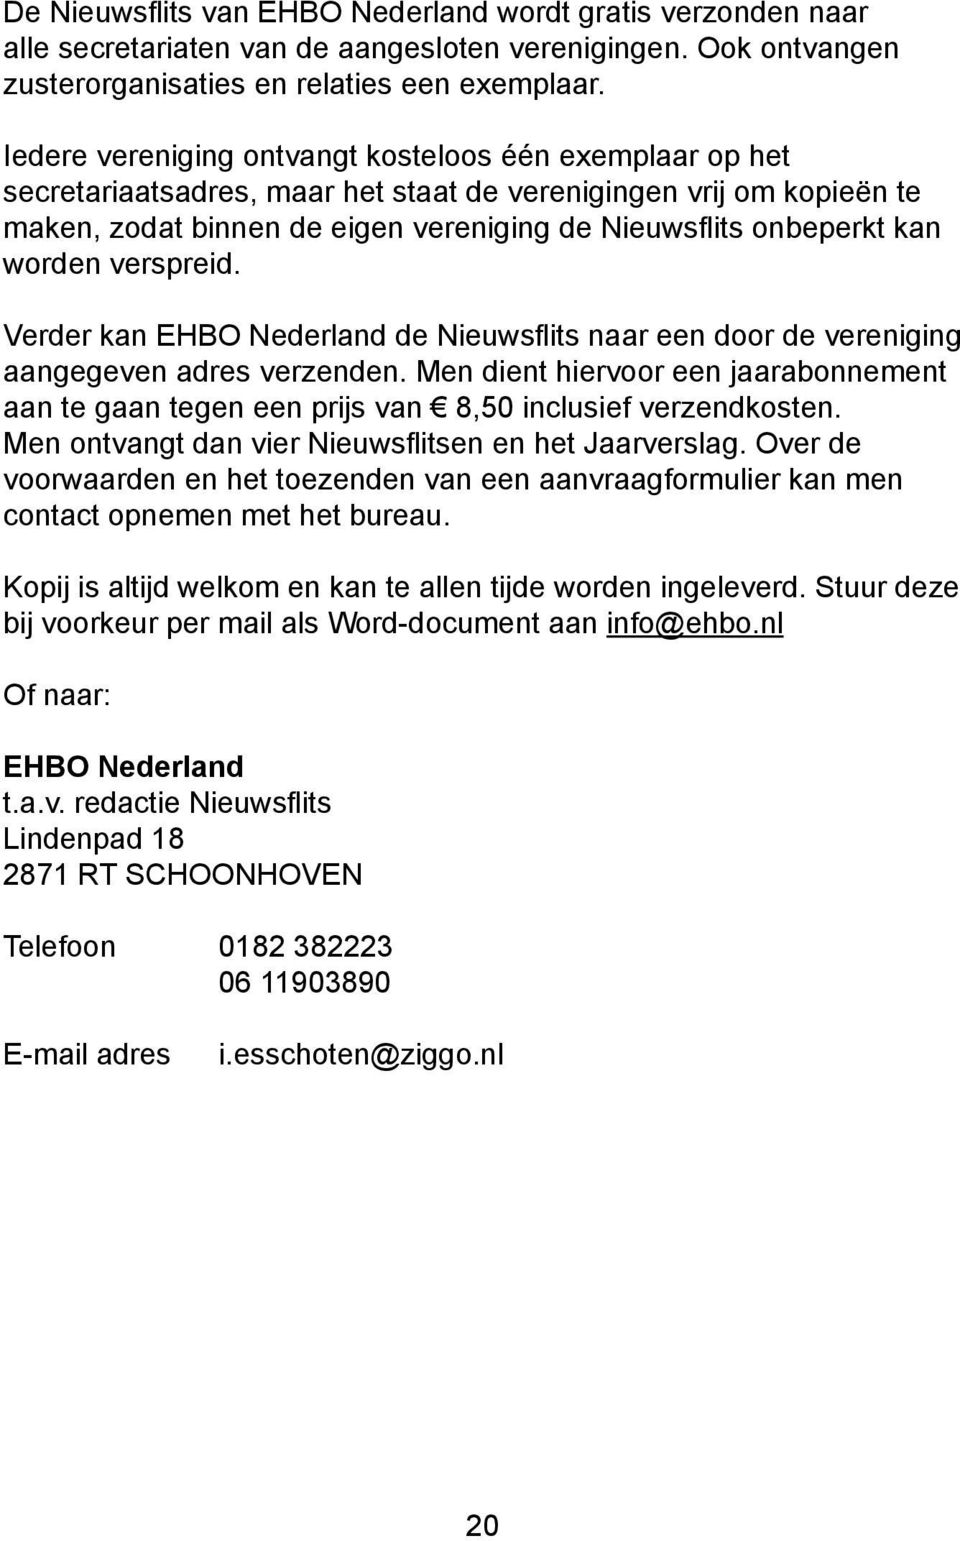 worden verspreid. Verder kan EHBO Nederland de Nieuwsflits naar een door de vereniging aangegeven adres verzenden.